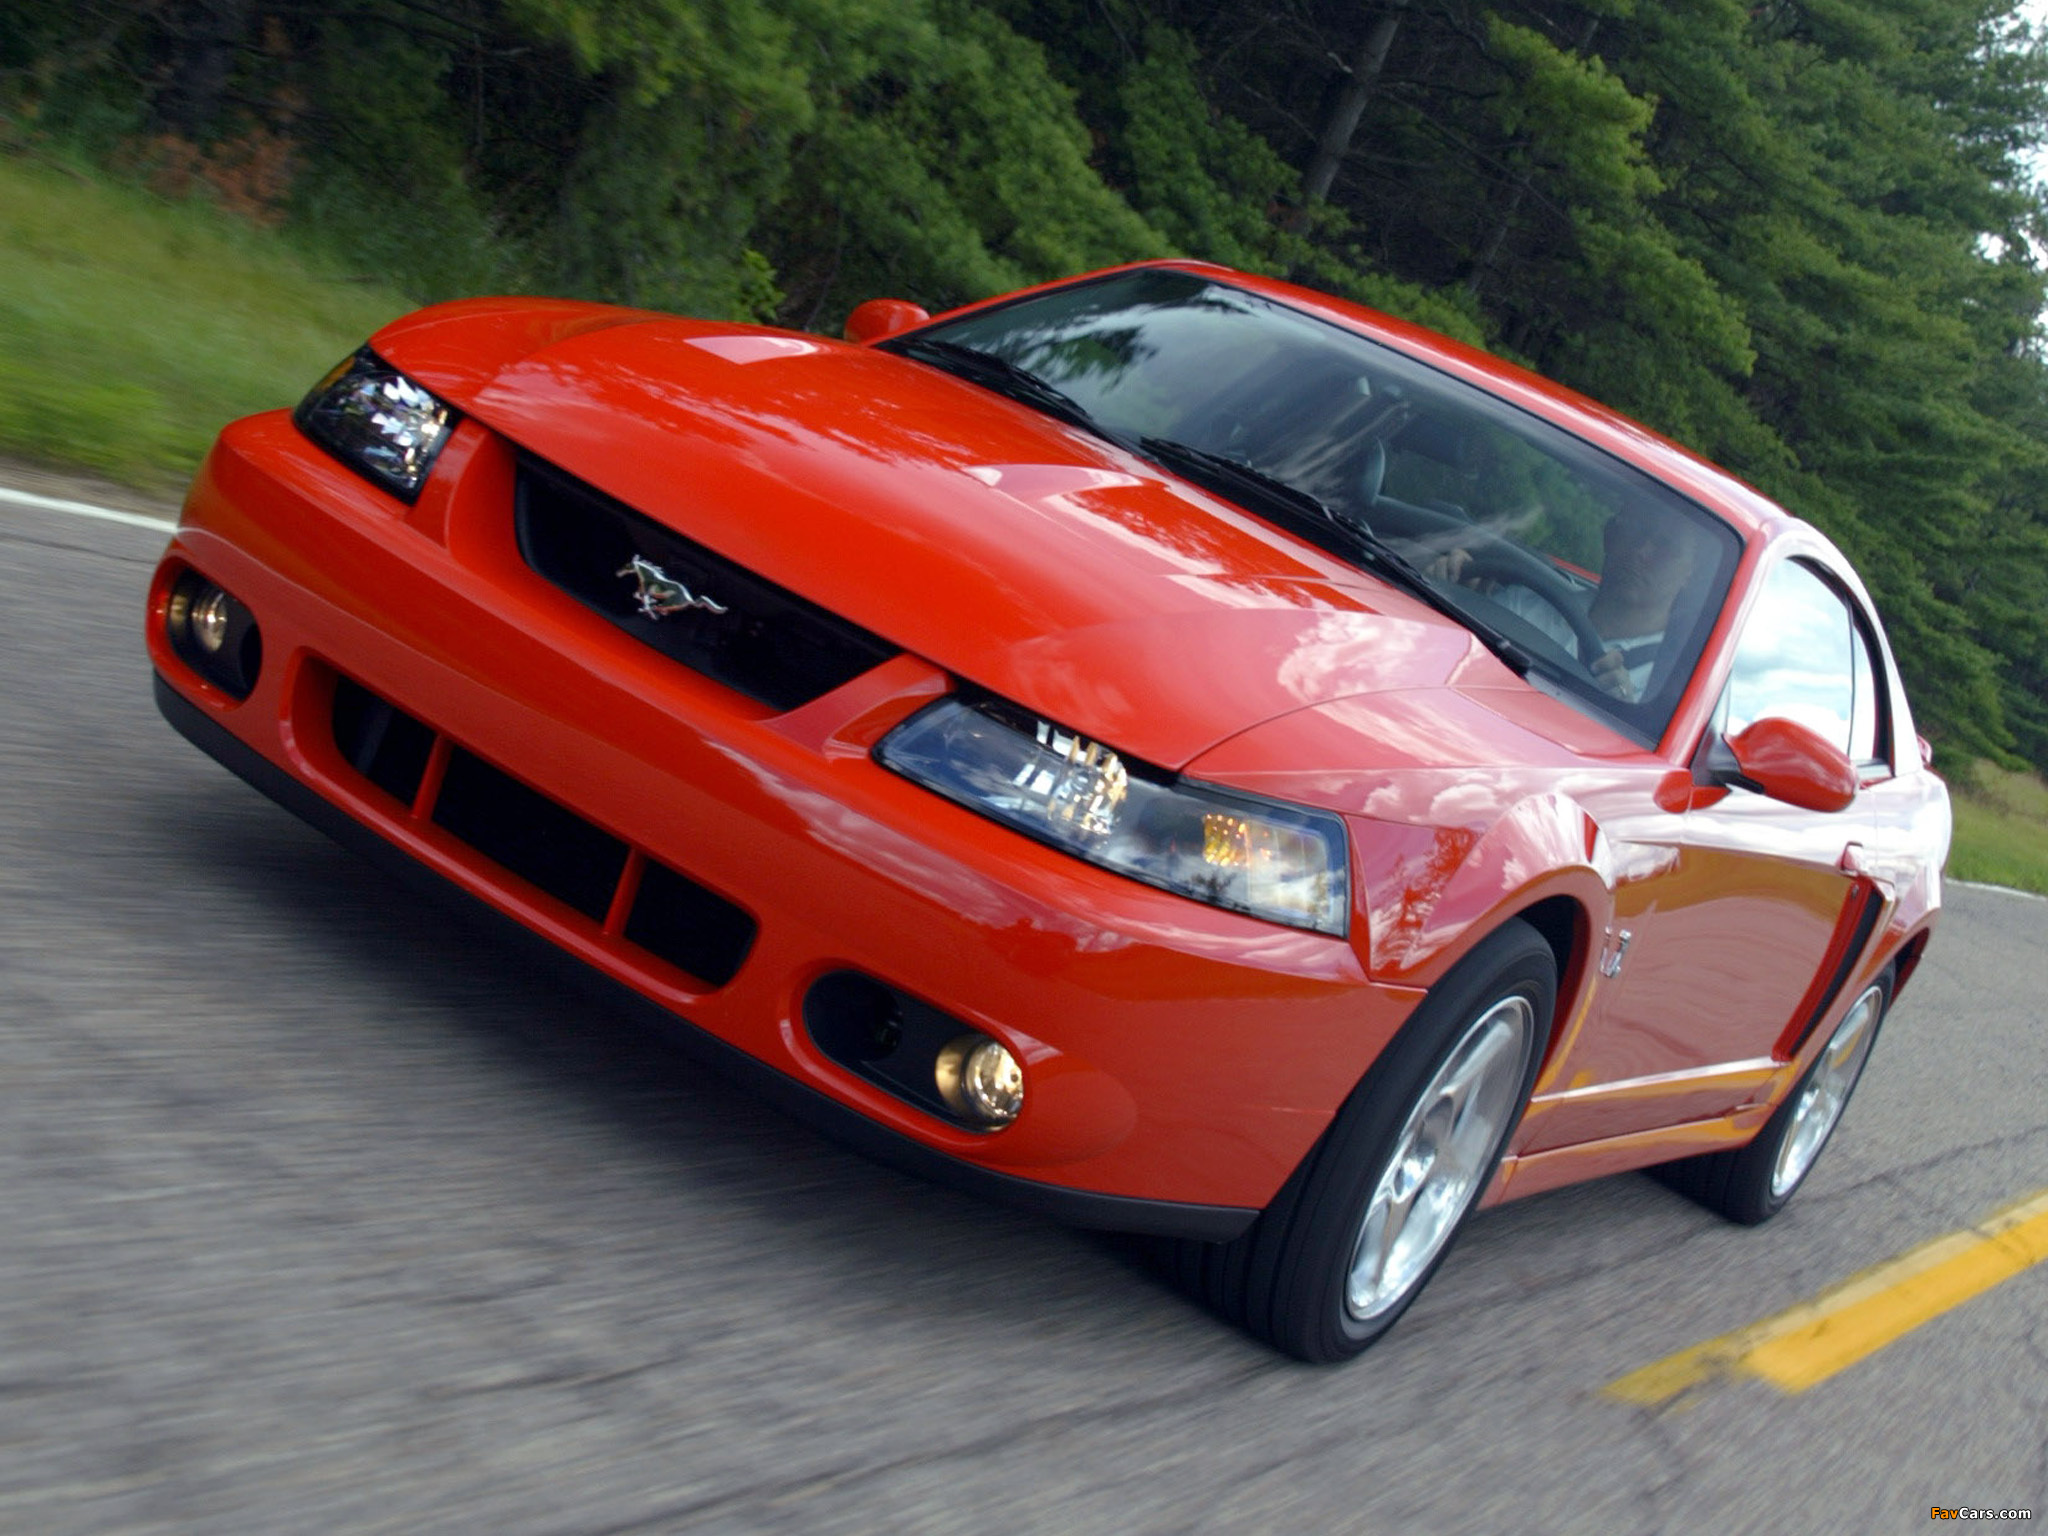 Used Ford Mustang SVT Cobra for Sale - Edmunds.com